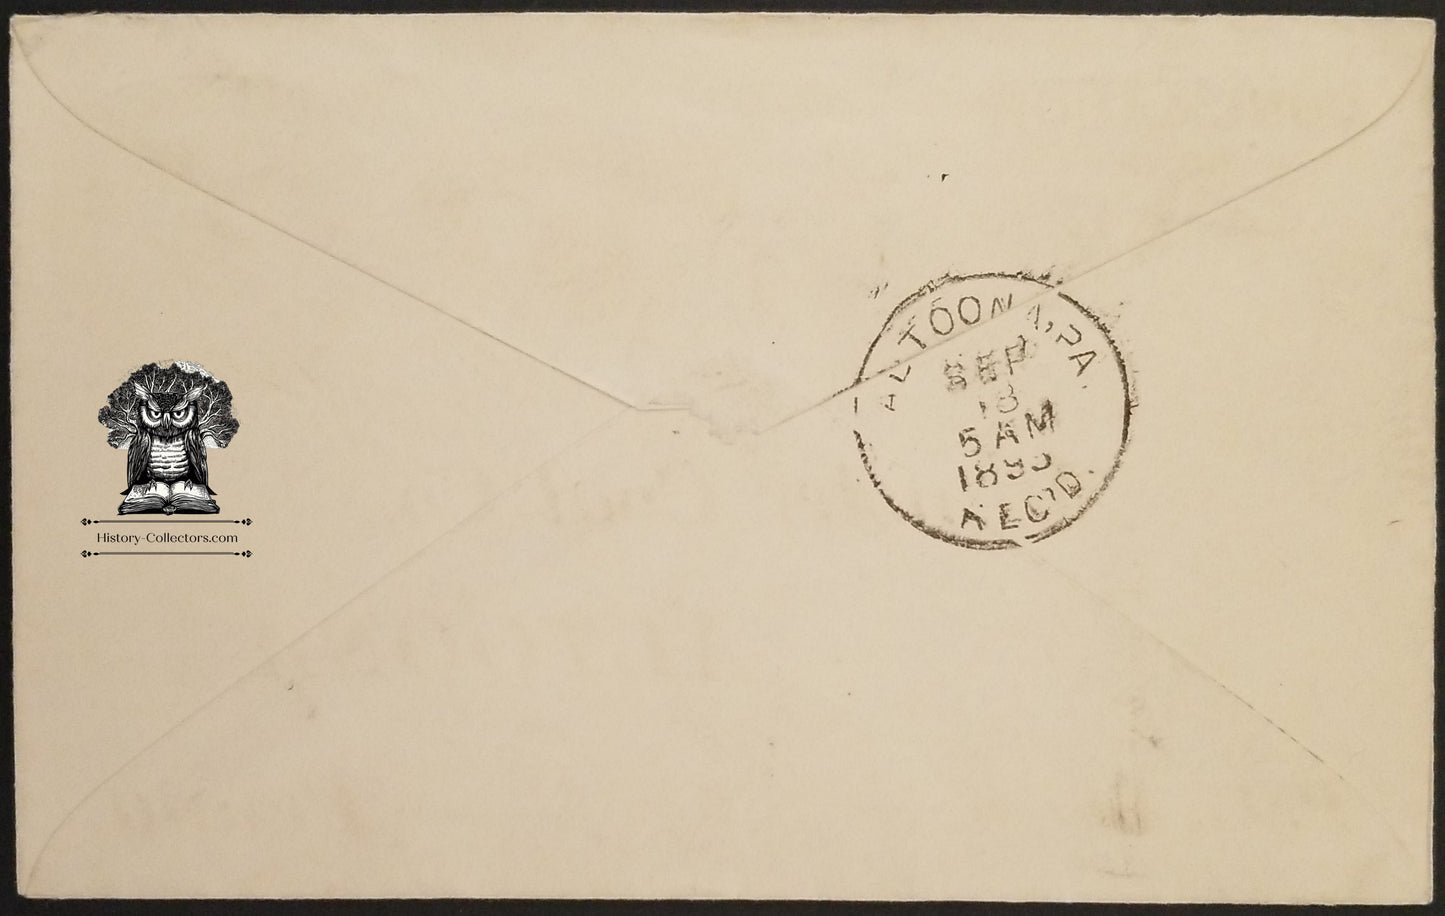 1893 Conemaugh Soft Coal Munster Coal Co - Altoona PA Postal Cover Envelope Cancel